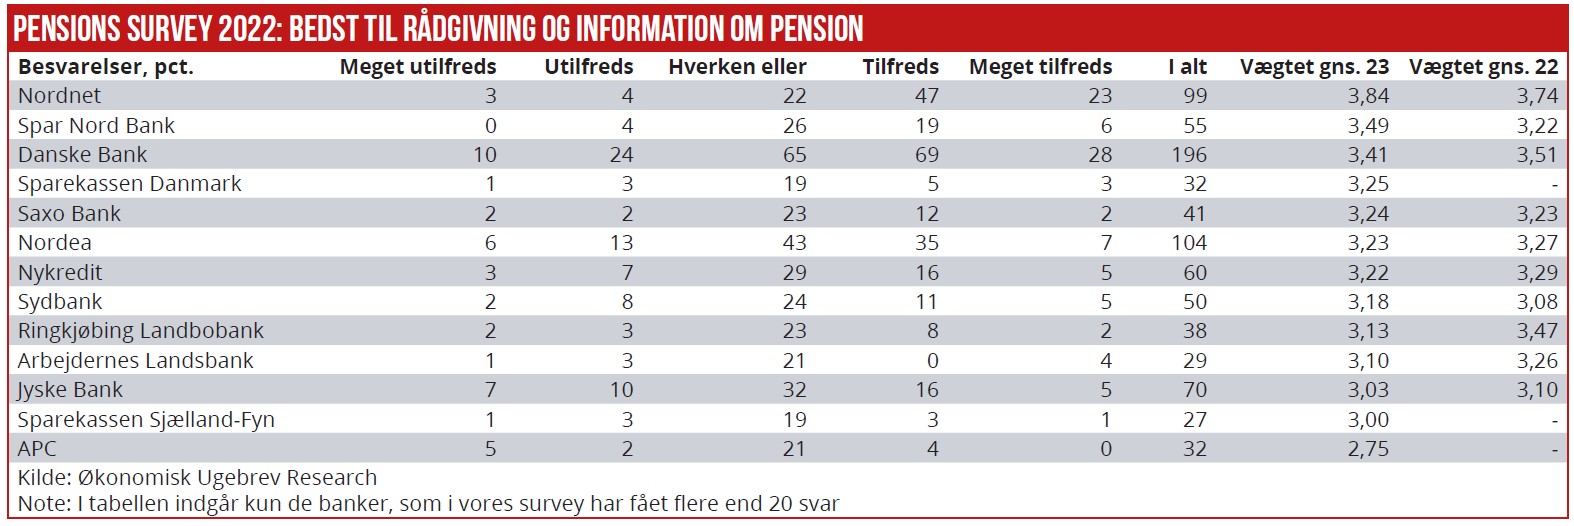 Pensions survey 02